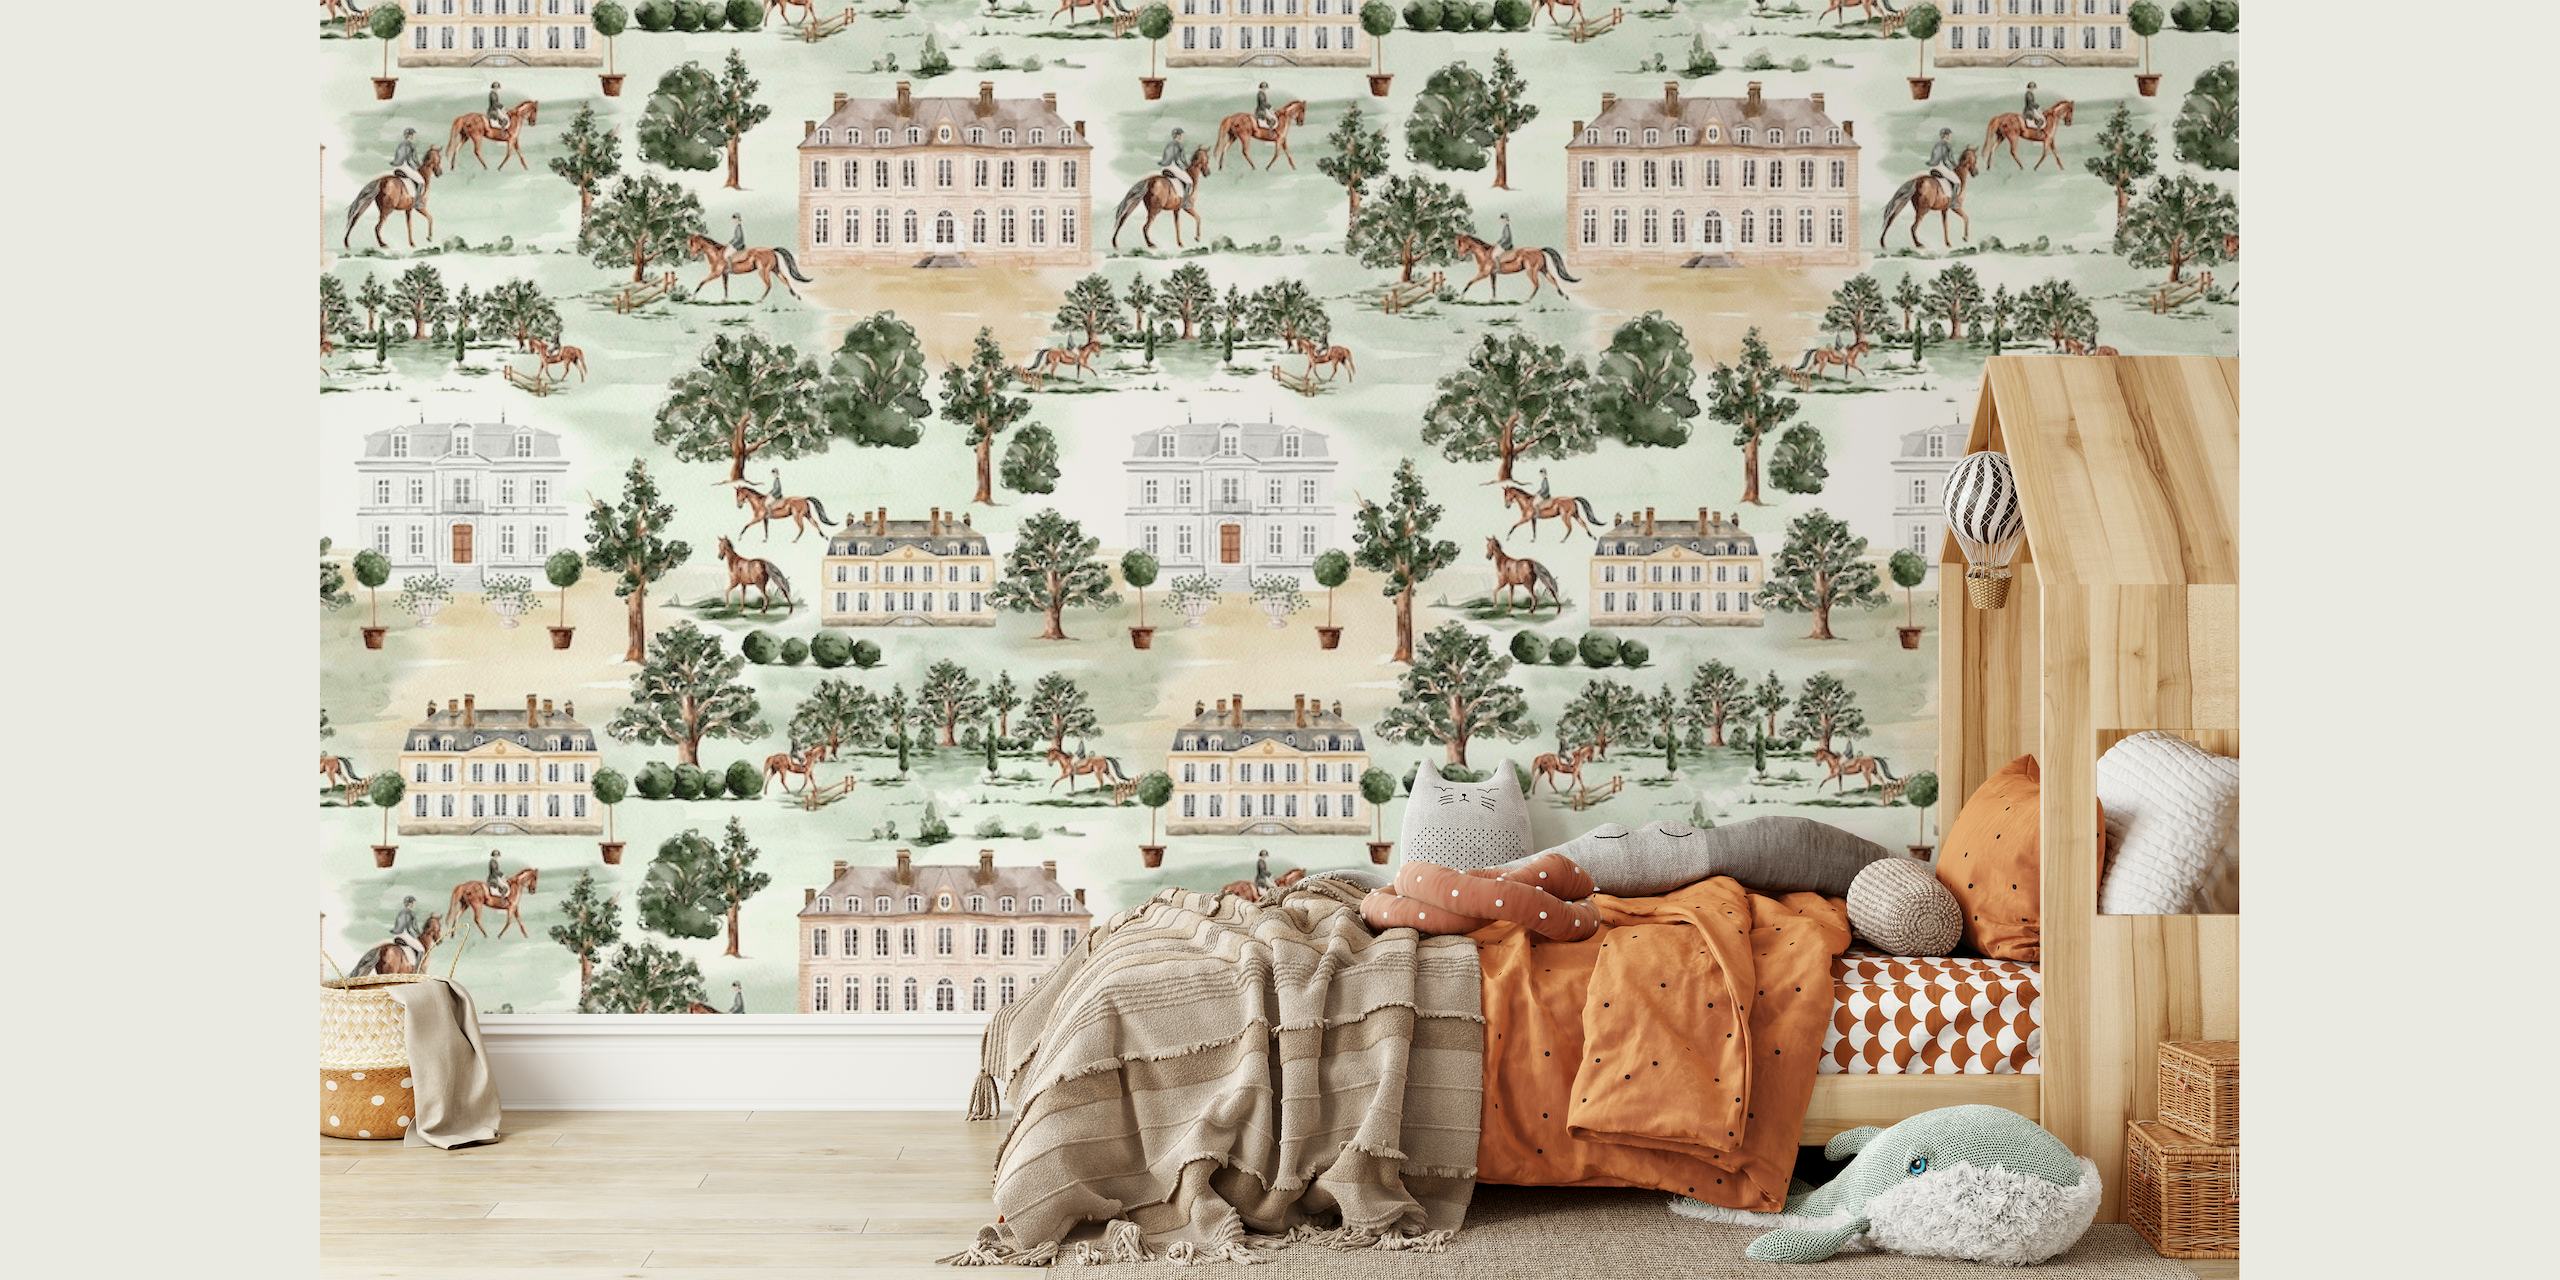 English country garden houses wallpaper